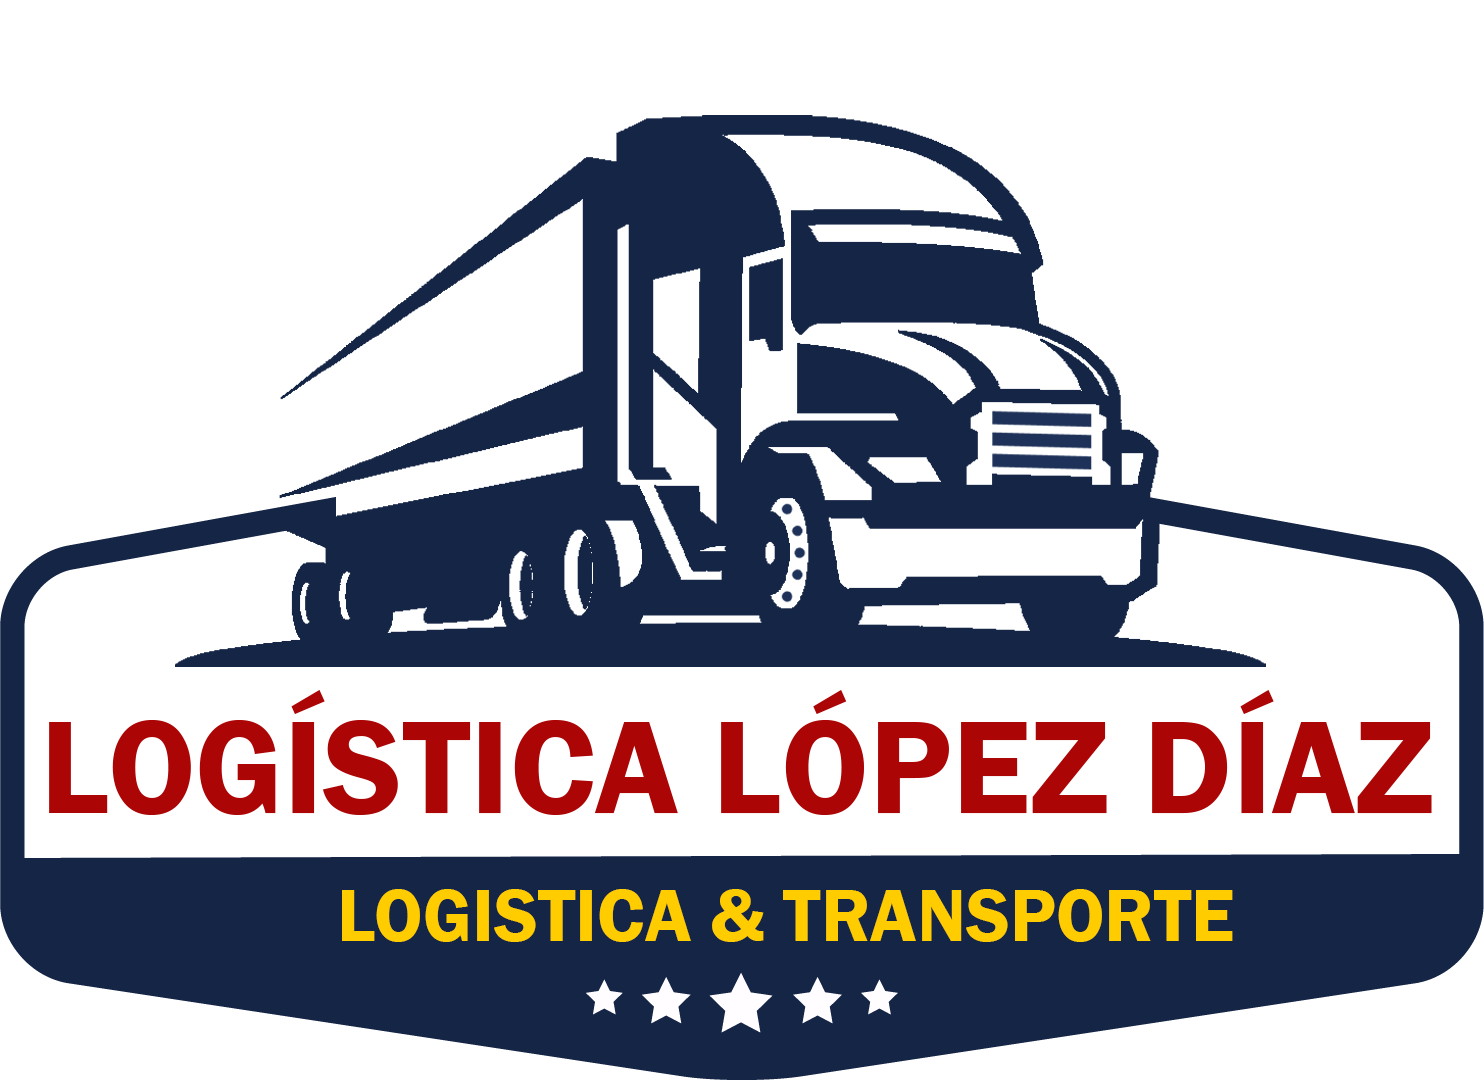 Logística López Diaz